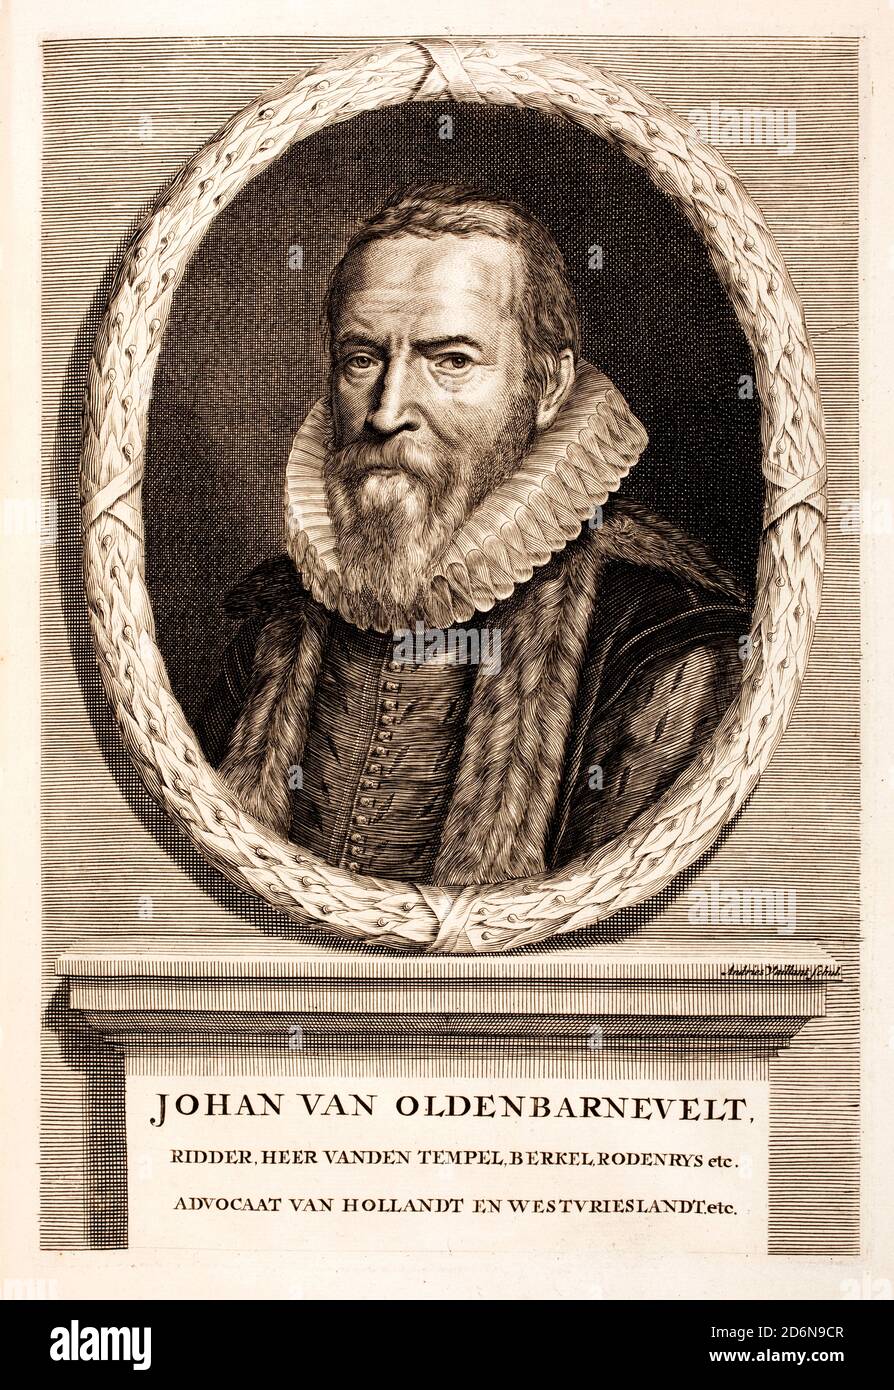 Johan van Oldenbarnevelt, il fondatore della Compagnia Olandese delle Indie Orientali. La 'United East India Company', o 'United East Indies Company' (nota anche con l'abbreviazione 'VOC' in olandese) (1547 – 1619) statista olandese che ha svolto un ruolo importante nella lotta olandese per l'indipendenza dalla Spagna. Foto Stock